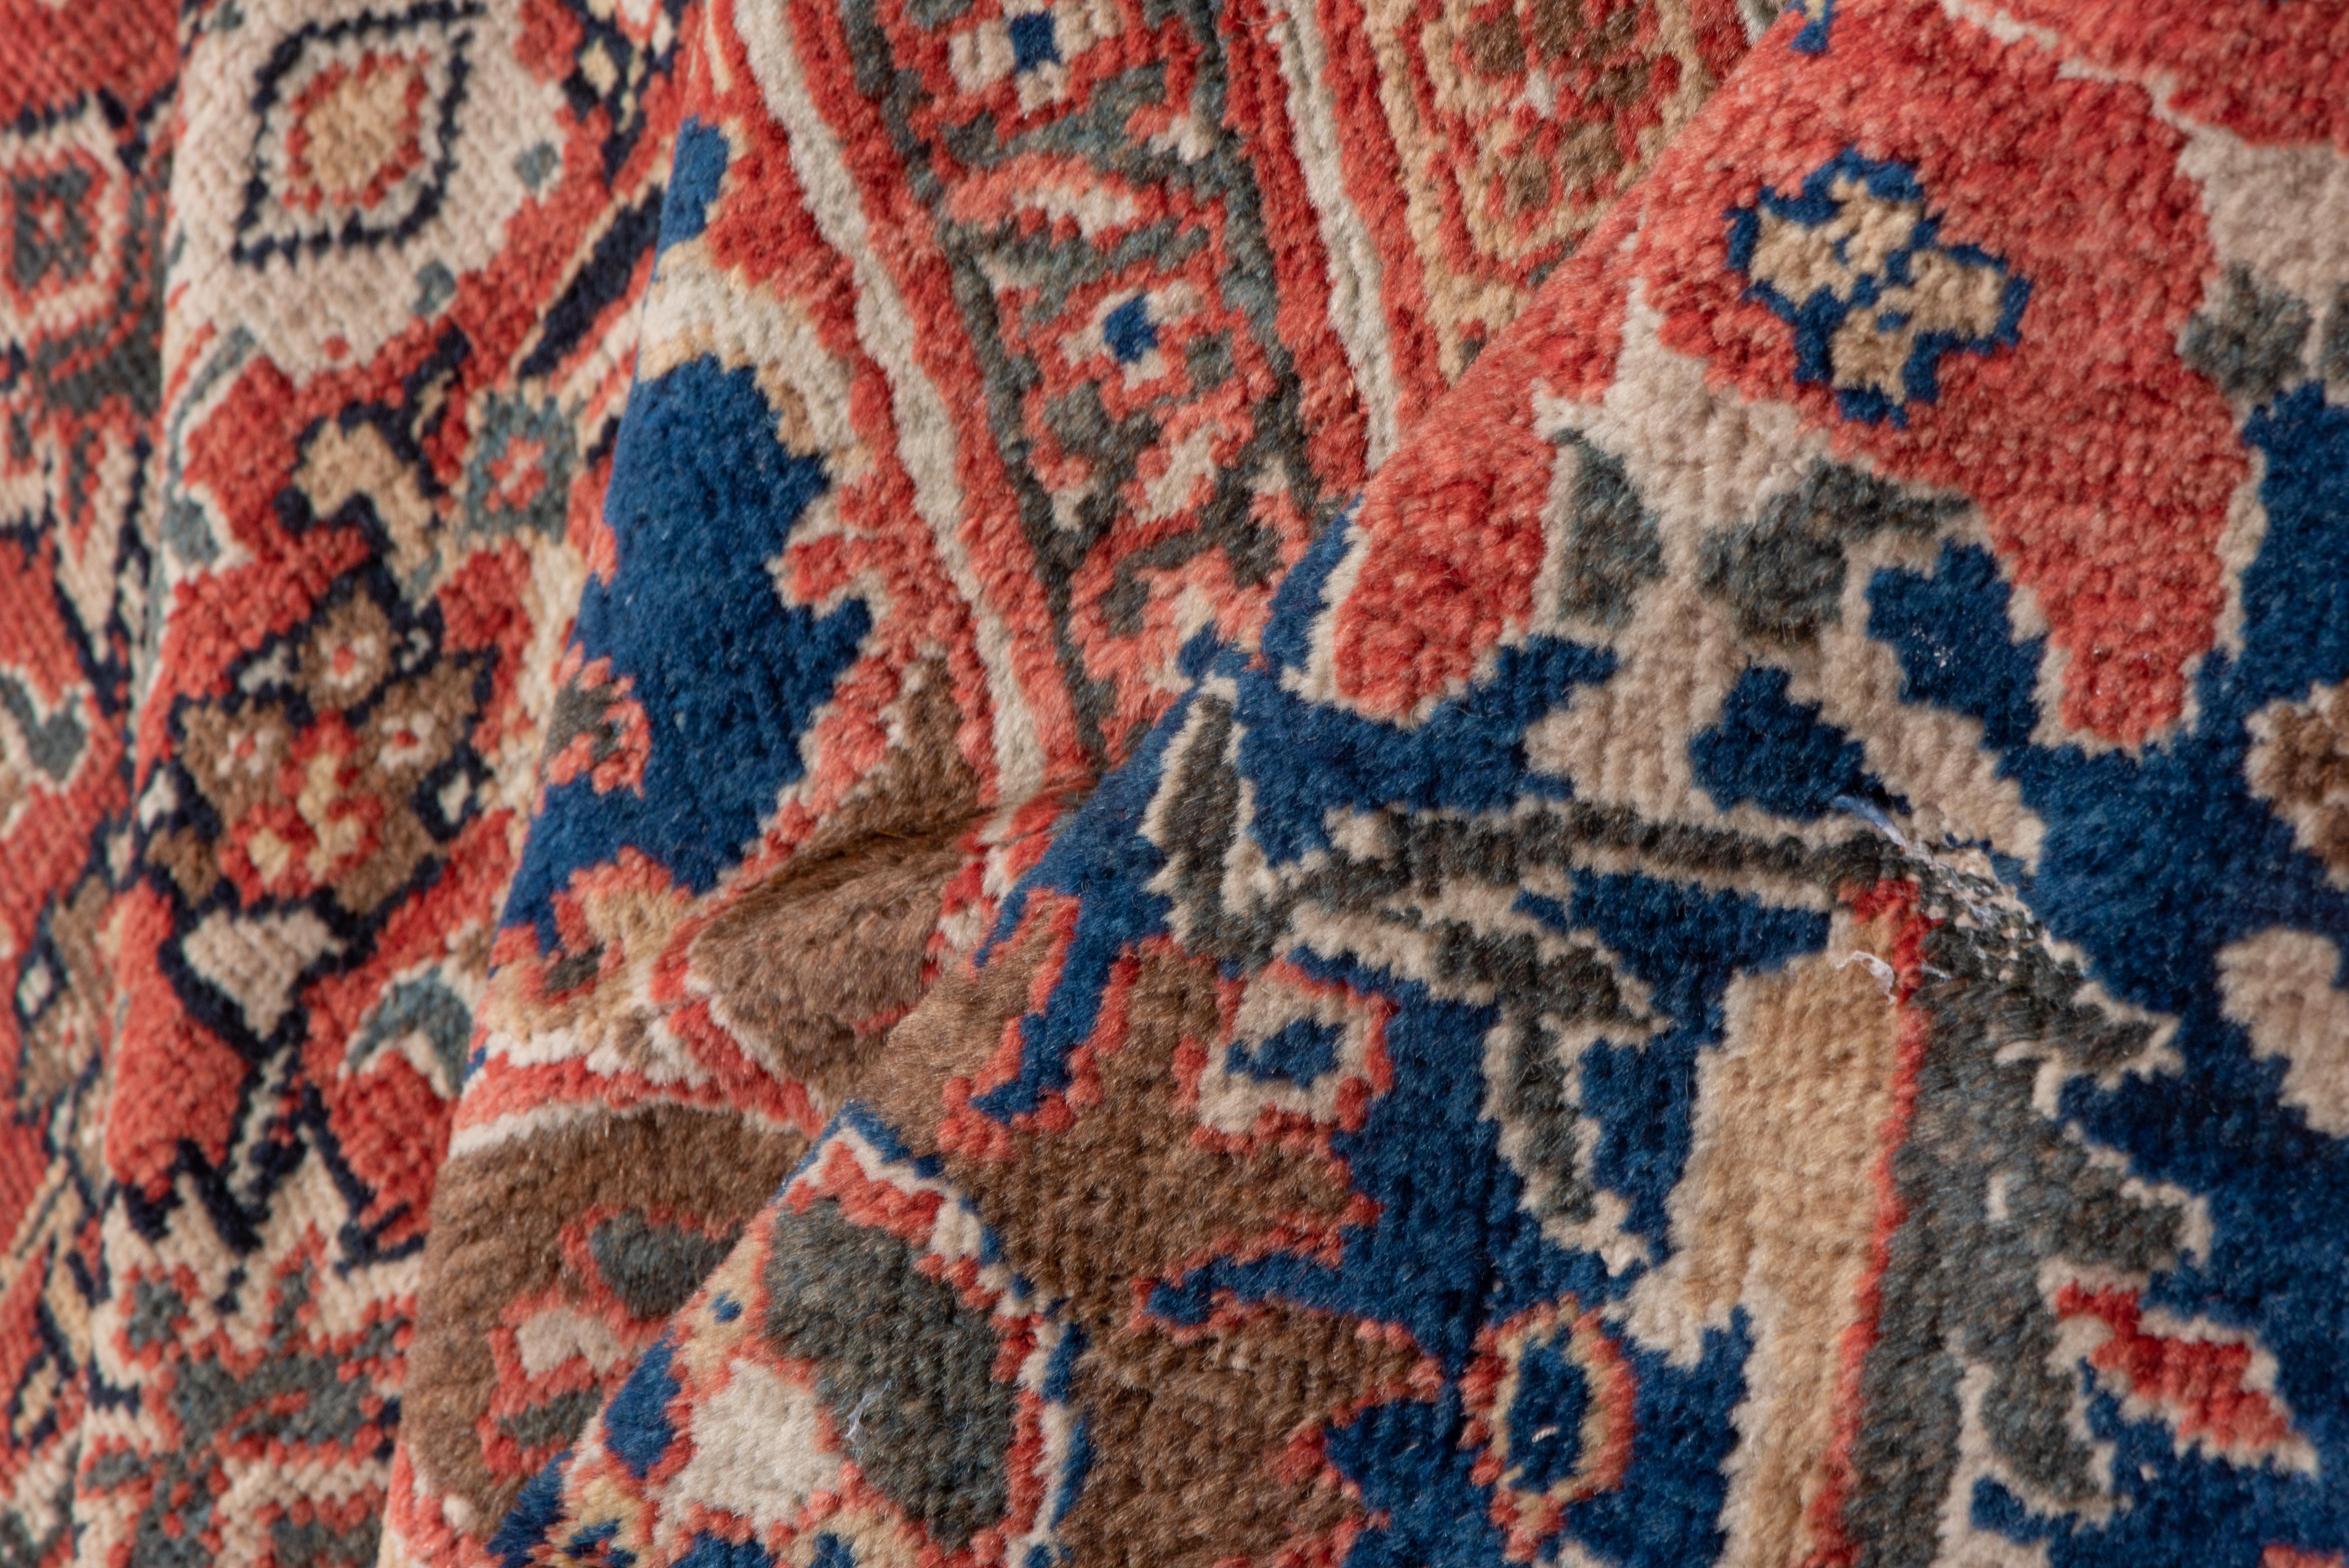 Ce très beau tapis de village de Perse occidentale présente un petit motif Herati soigneusement dessiné sur un fond rouge garance, fixé par un petit médaillon bleu royal et des coins assortis. Bordure principale bleu royal avec deux types de